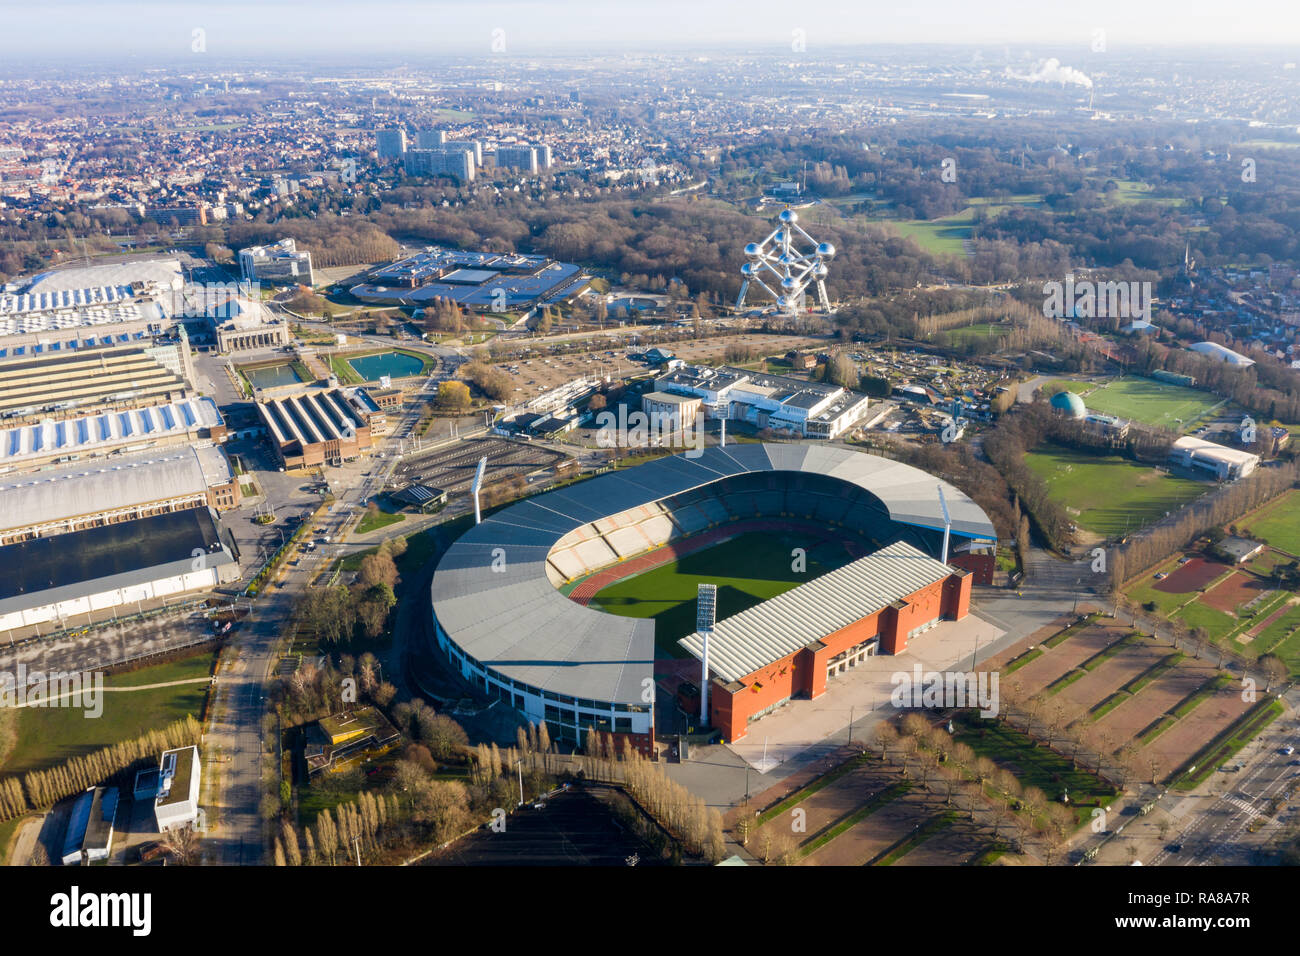 König Baudouin National Football und Rugby Stadion Luftaufnahme feat. Das Atomium Wahrzeichen Gebäude im Stadtzentrum, Brüssel, Belgien Stockfoto